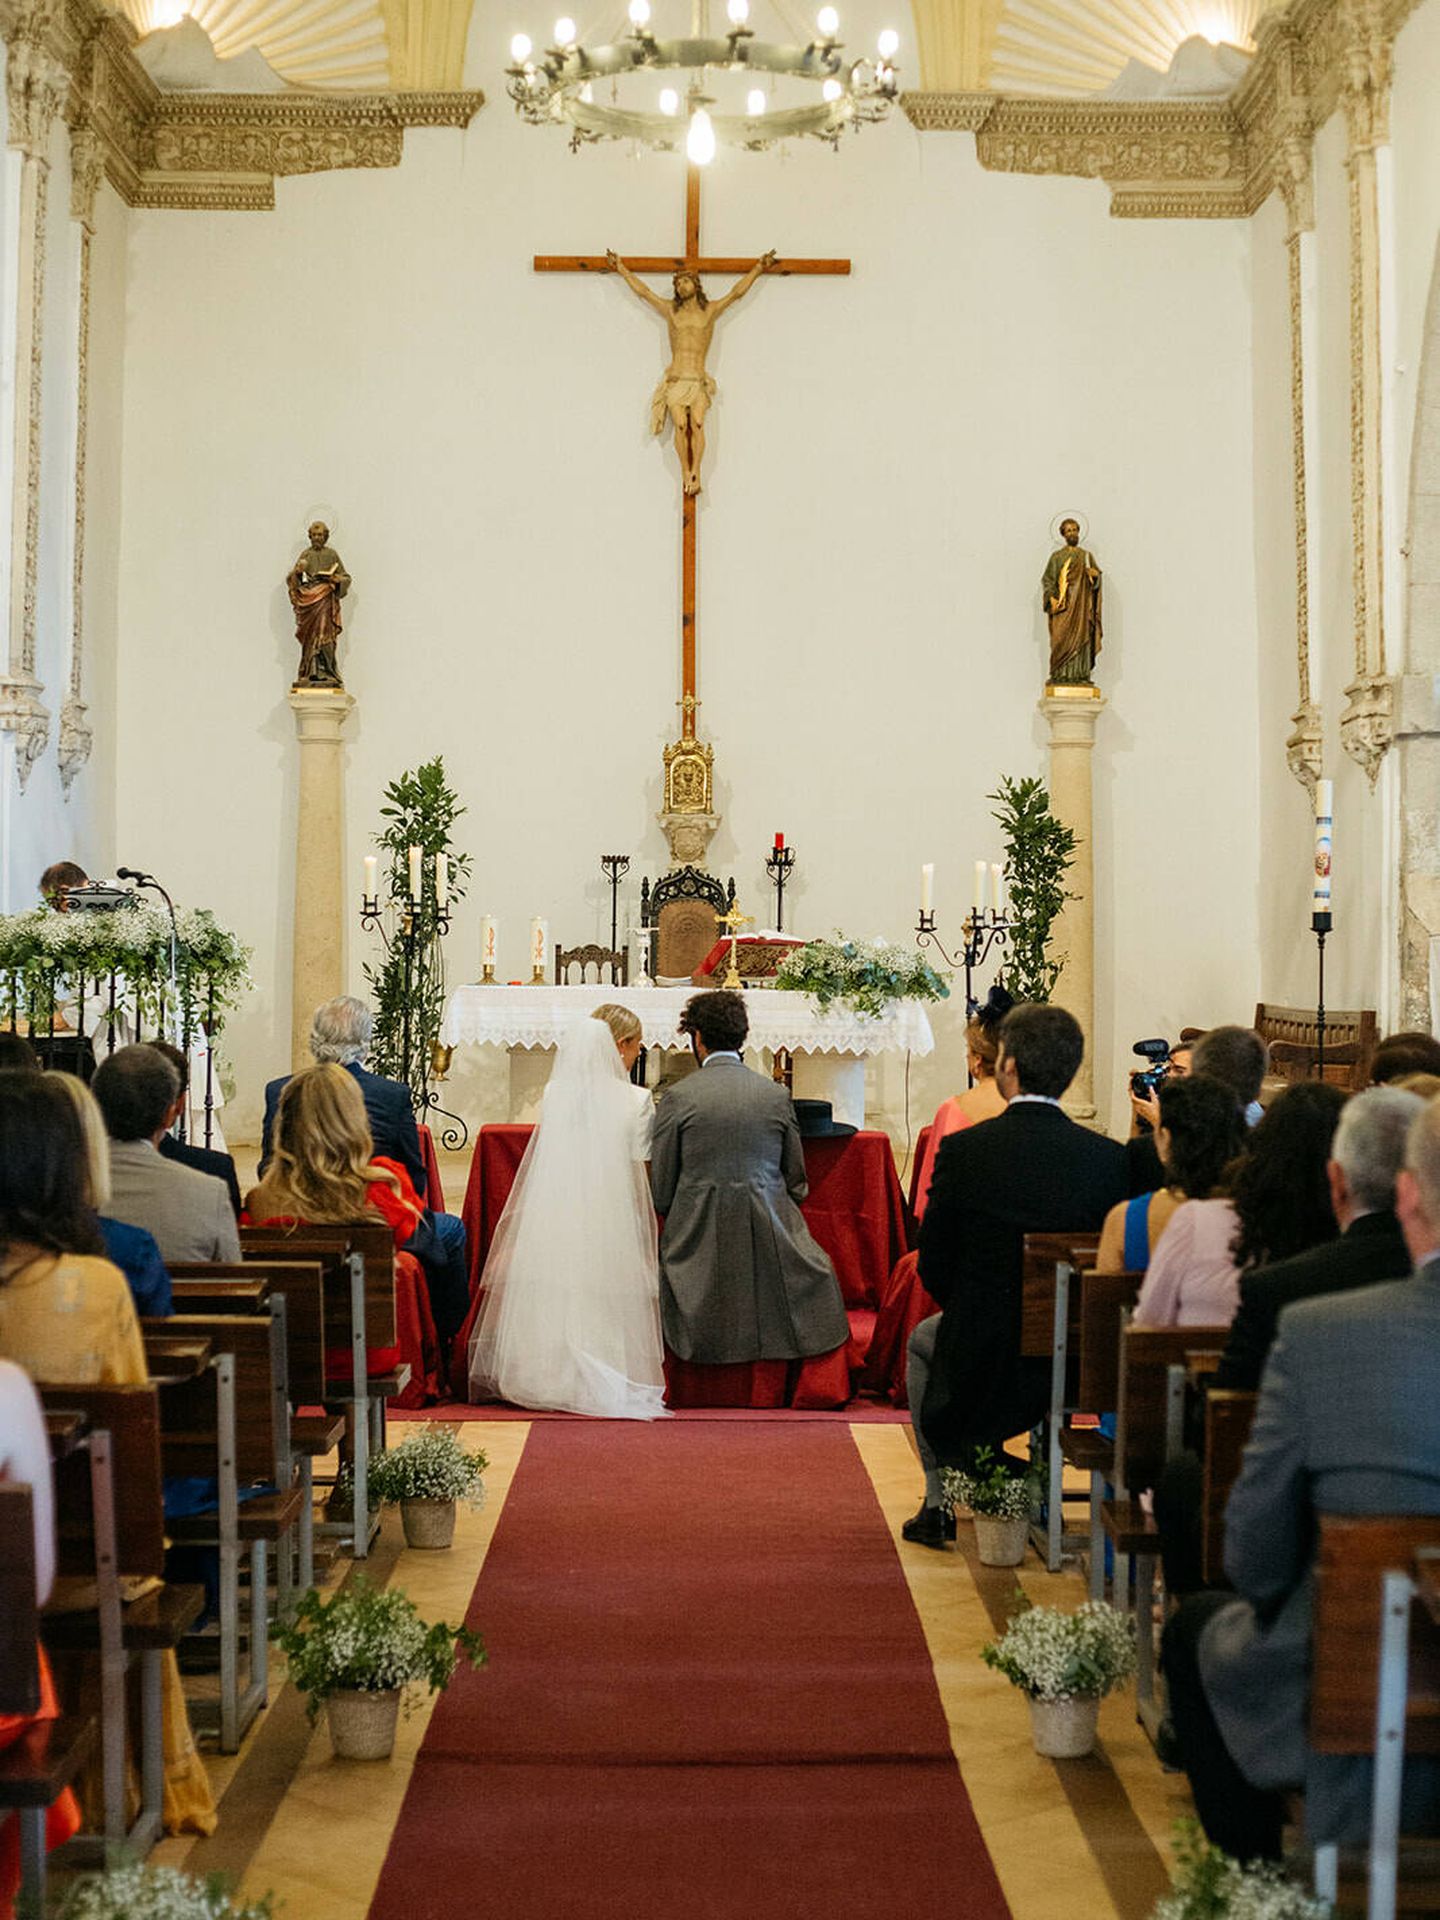 La boda de Leticia y Jorge. (Alejandra Ortiz)